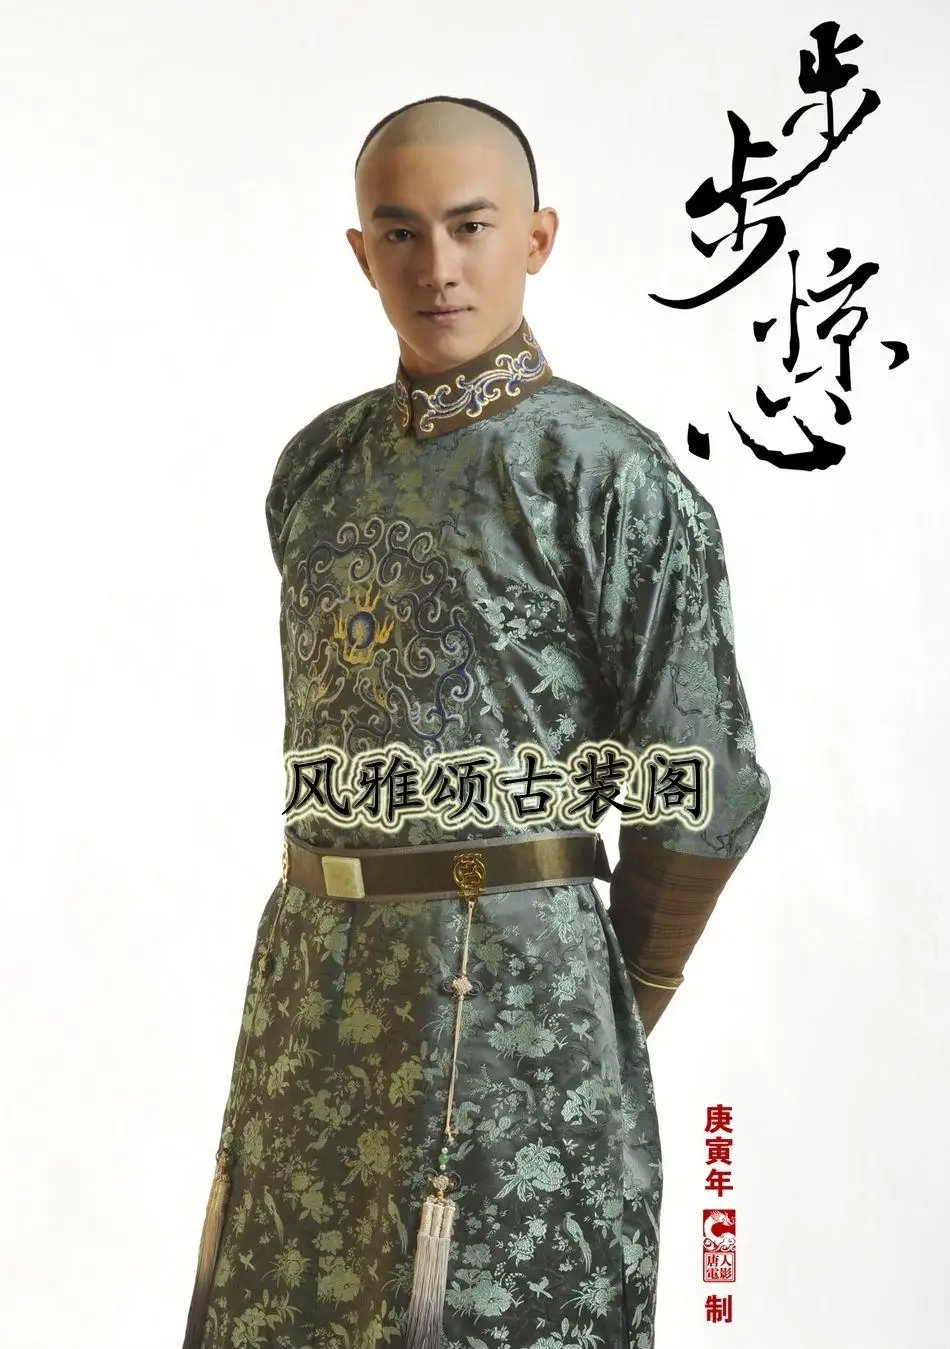 Ши Si вы в 14th Принц мужской костюм династии Цин принц дитя костюм для ТВ играть bubujingxin - Цвет: C